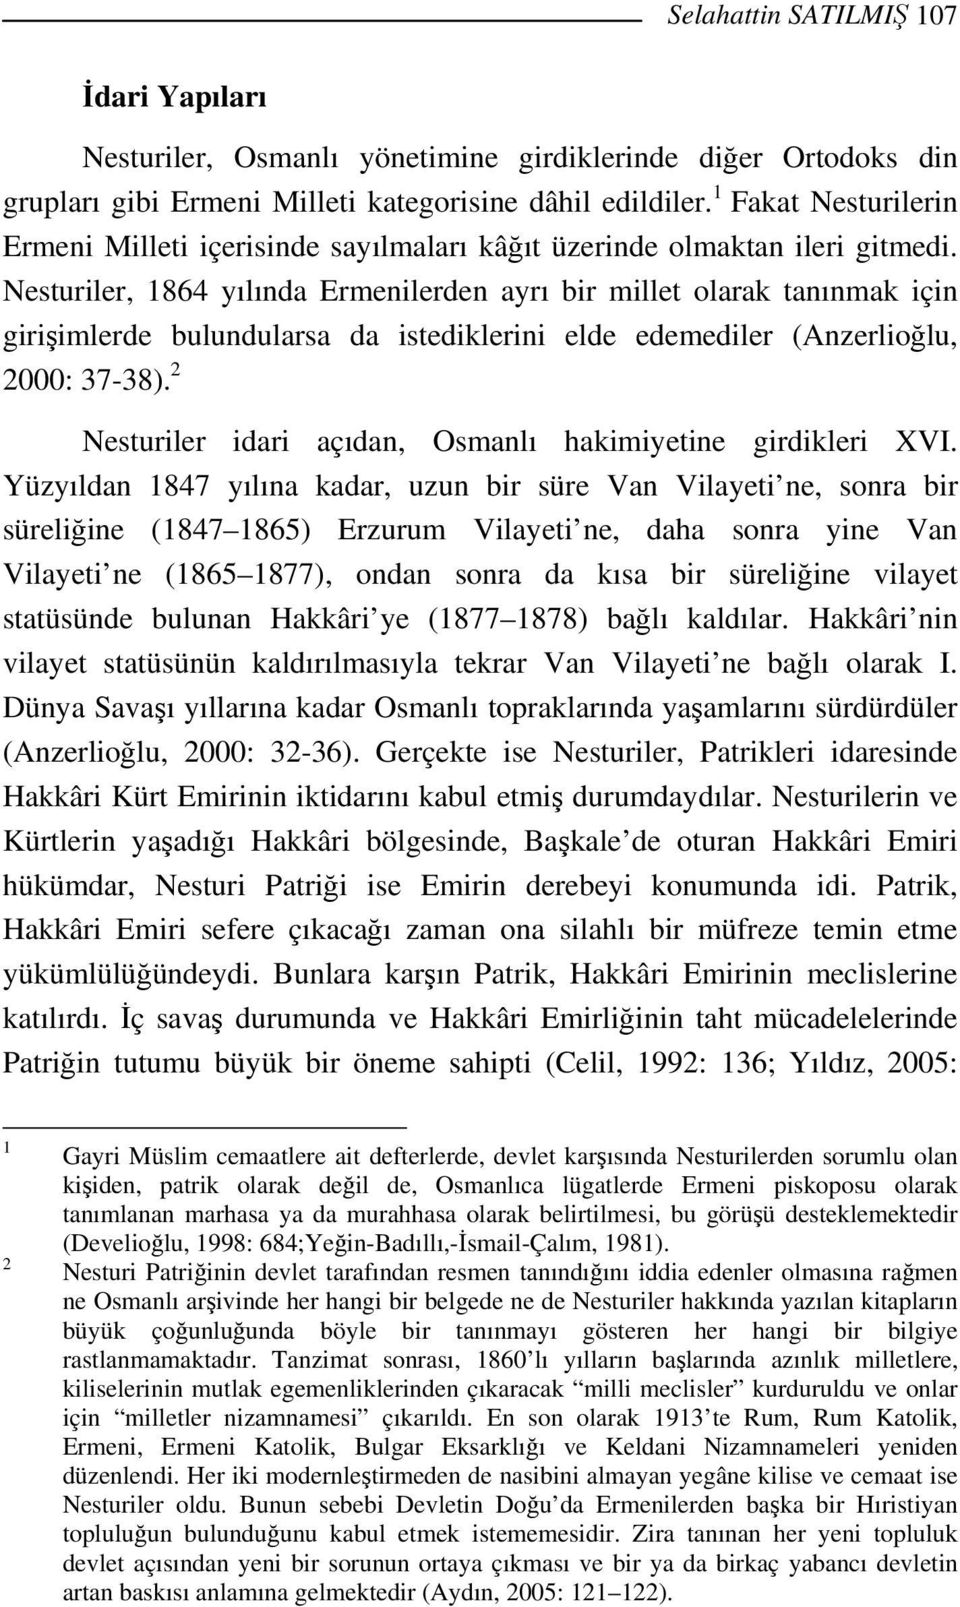 Nesturiler, 1864 yılında Ermenilerden ayrı bir millet olarak tanınmak için girişimlerde bulundularsa da istediklerini elde edemediler (Anzerlioğlu, 2000: 37-38).